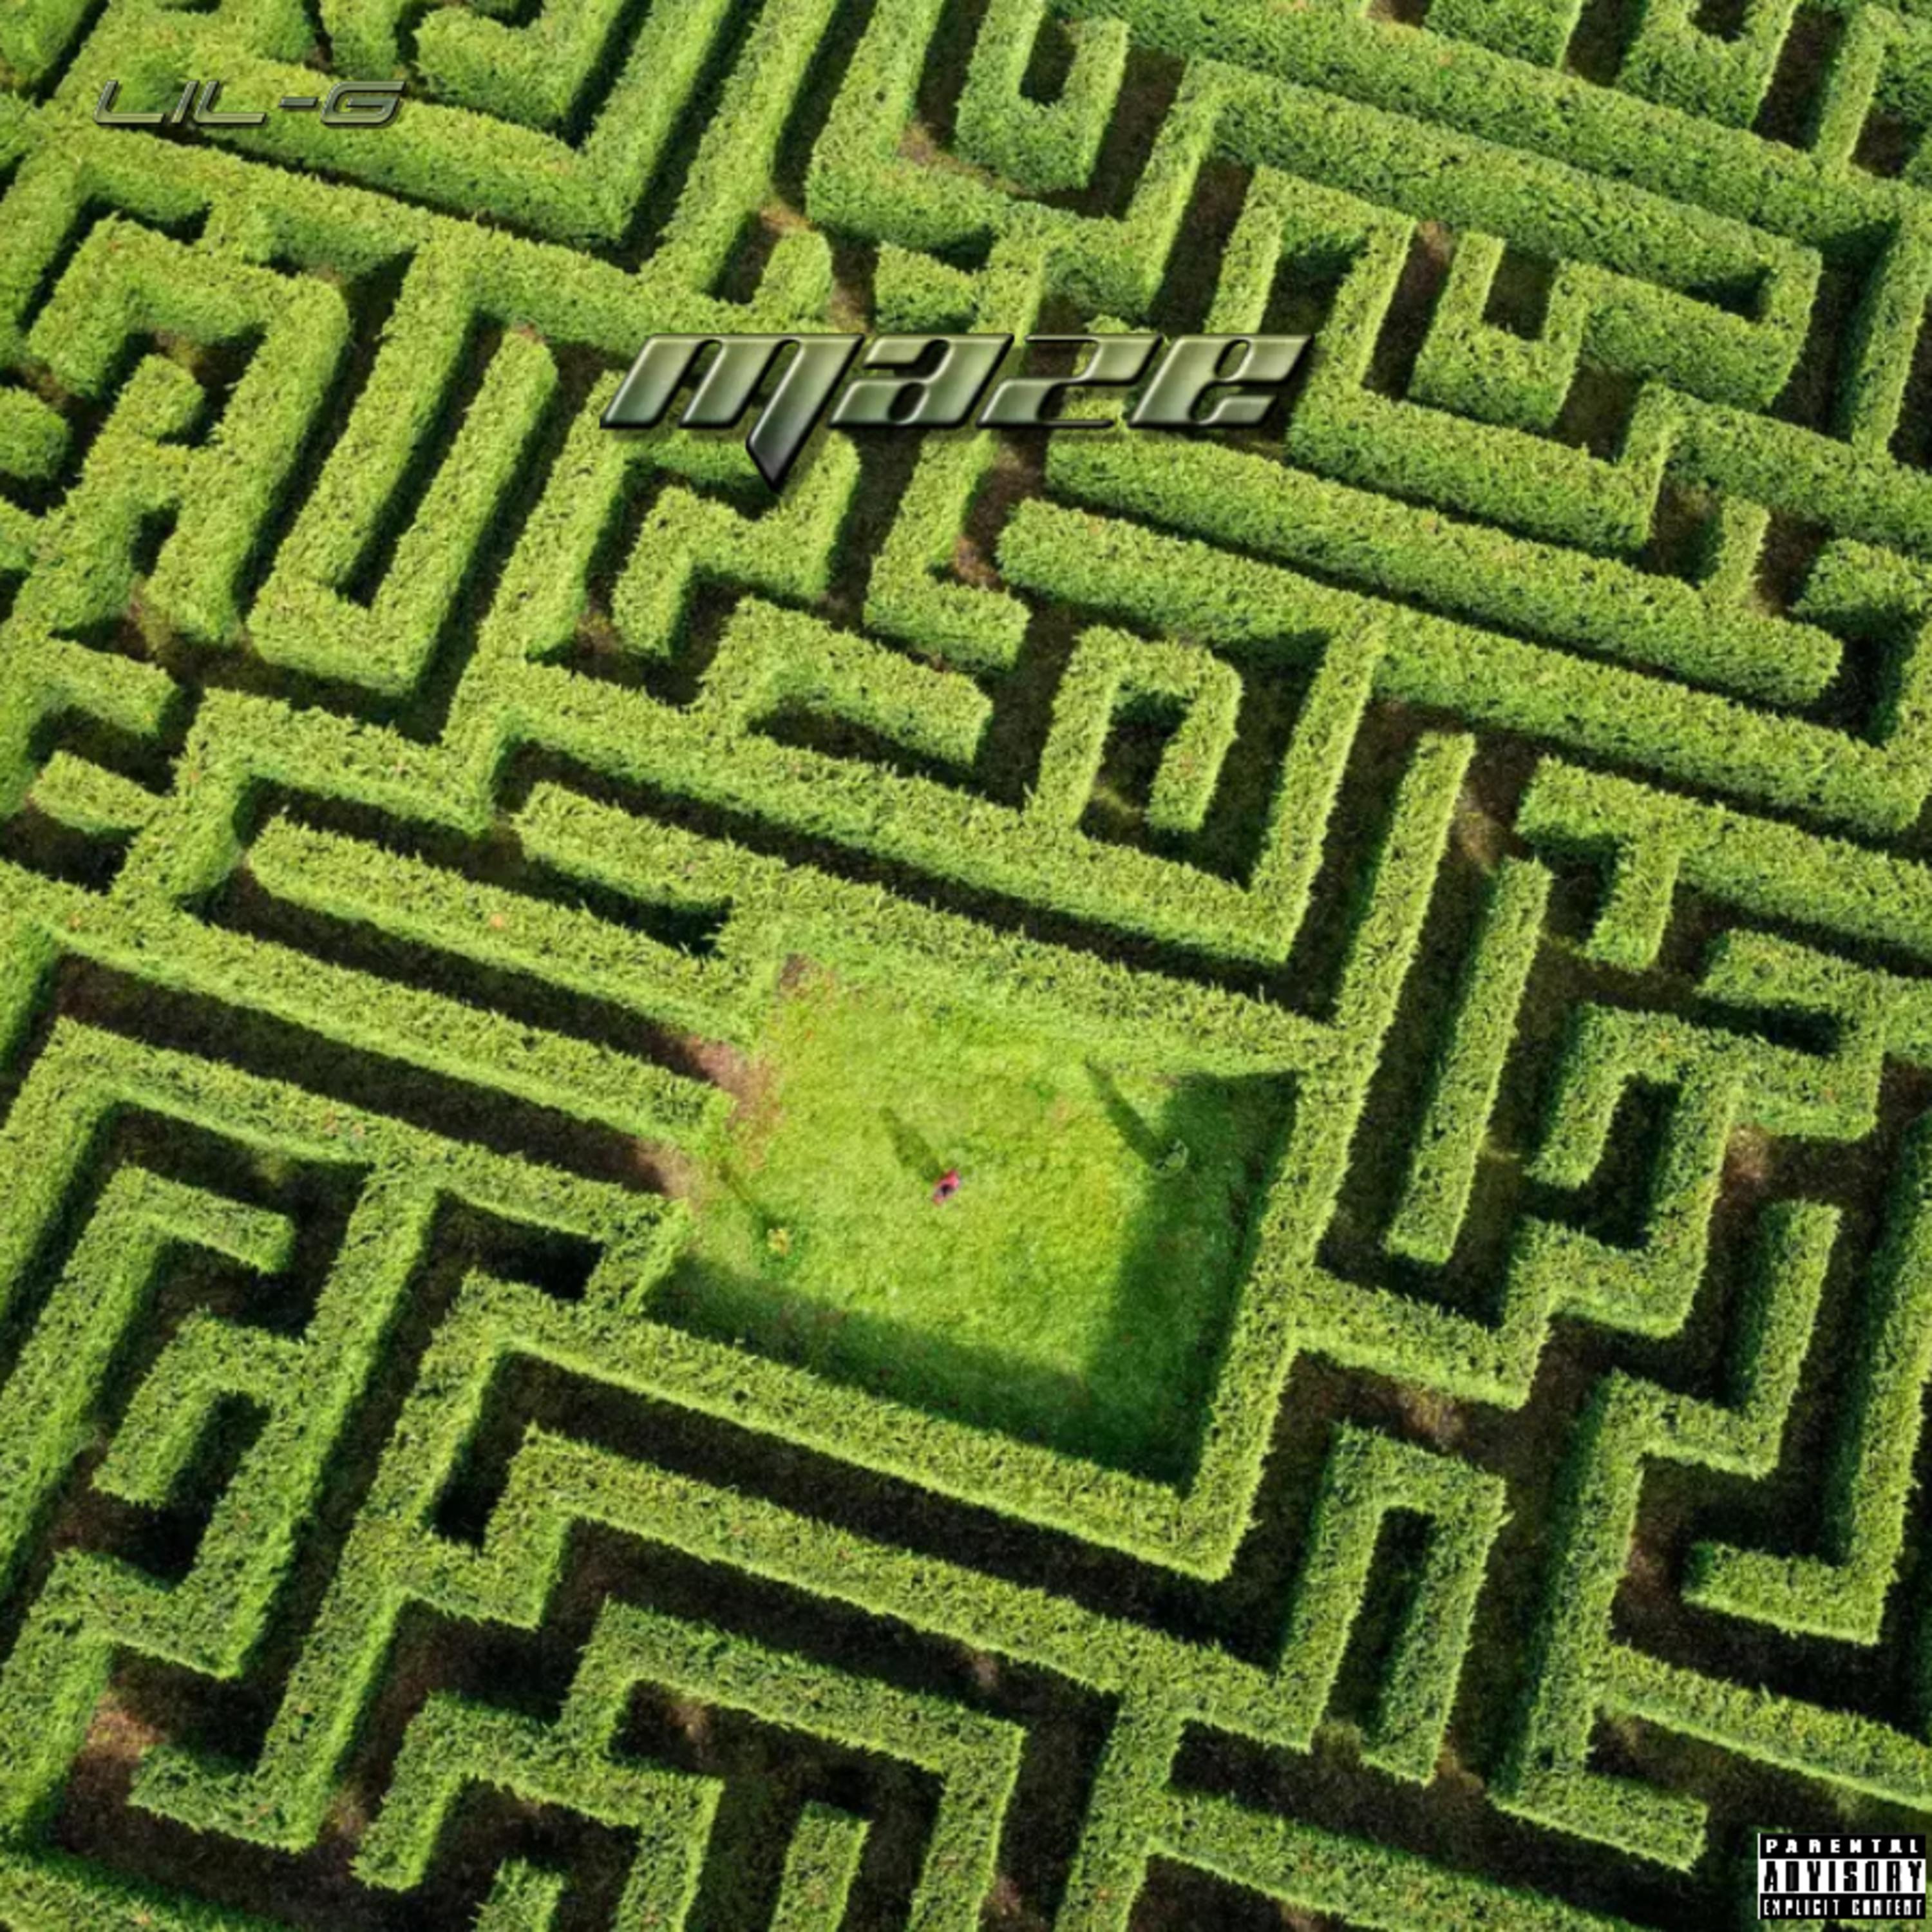 Lil-G - Maze